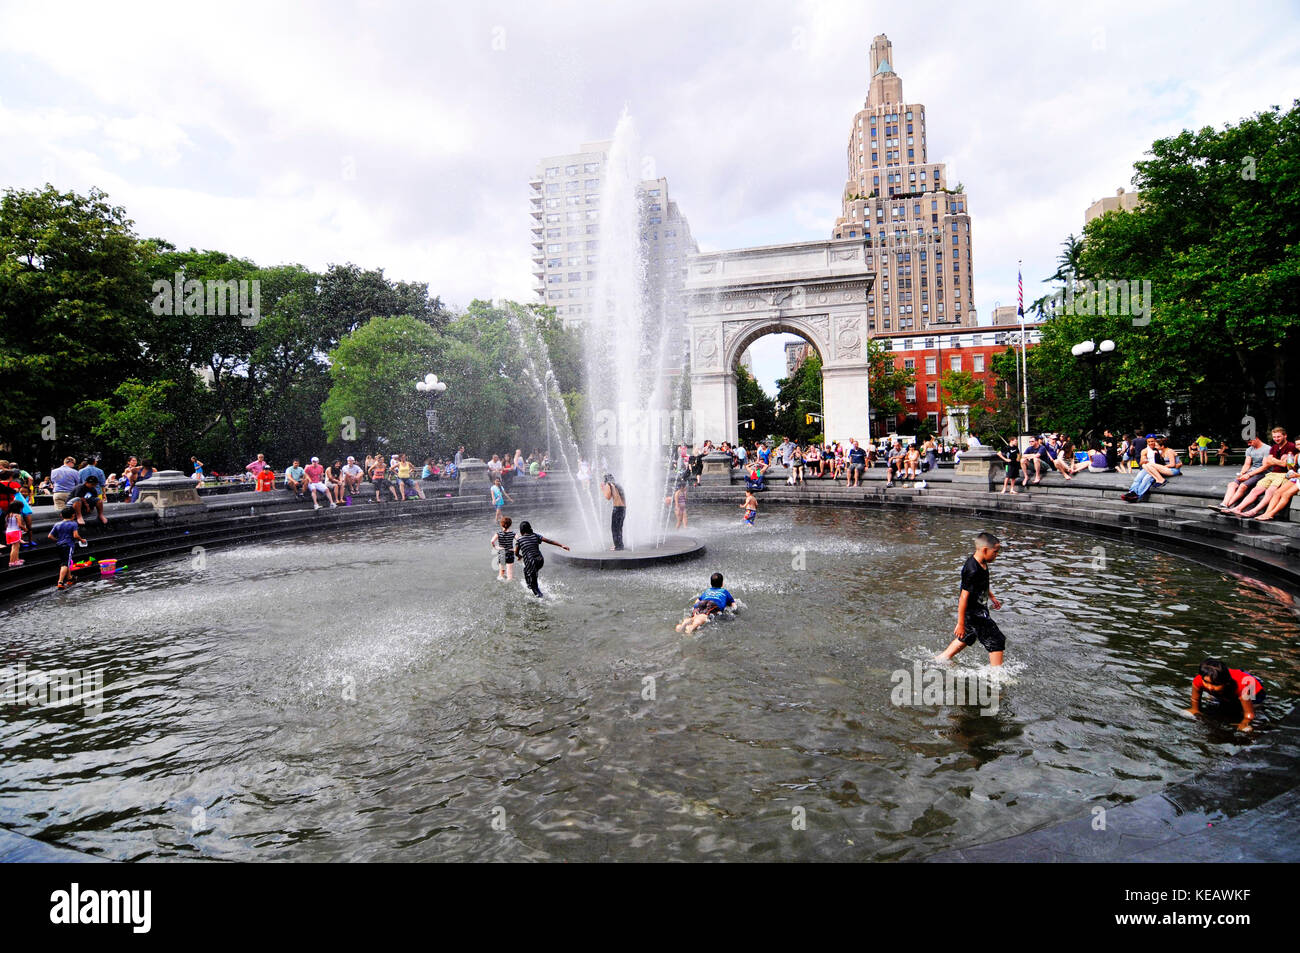 Washington Square Park est un parc public célèbre à Greenwich Village, Manhattan. Banque D'Images